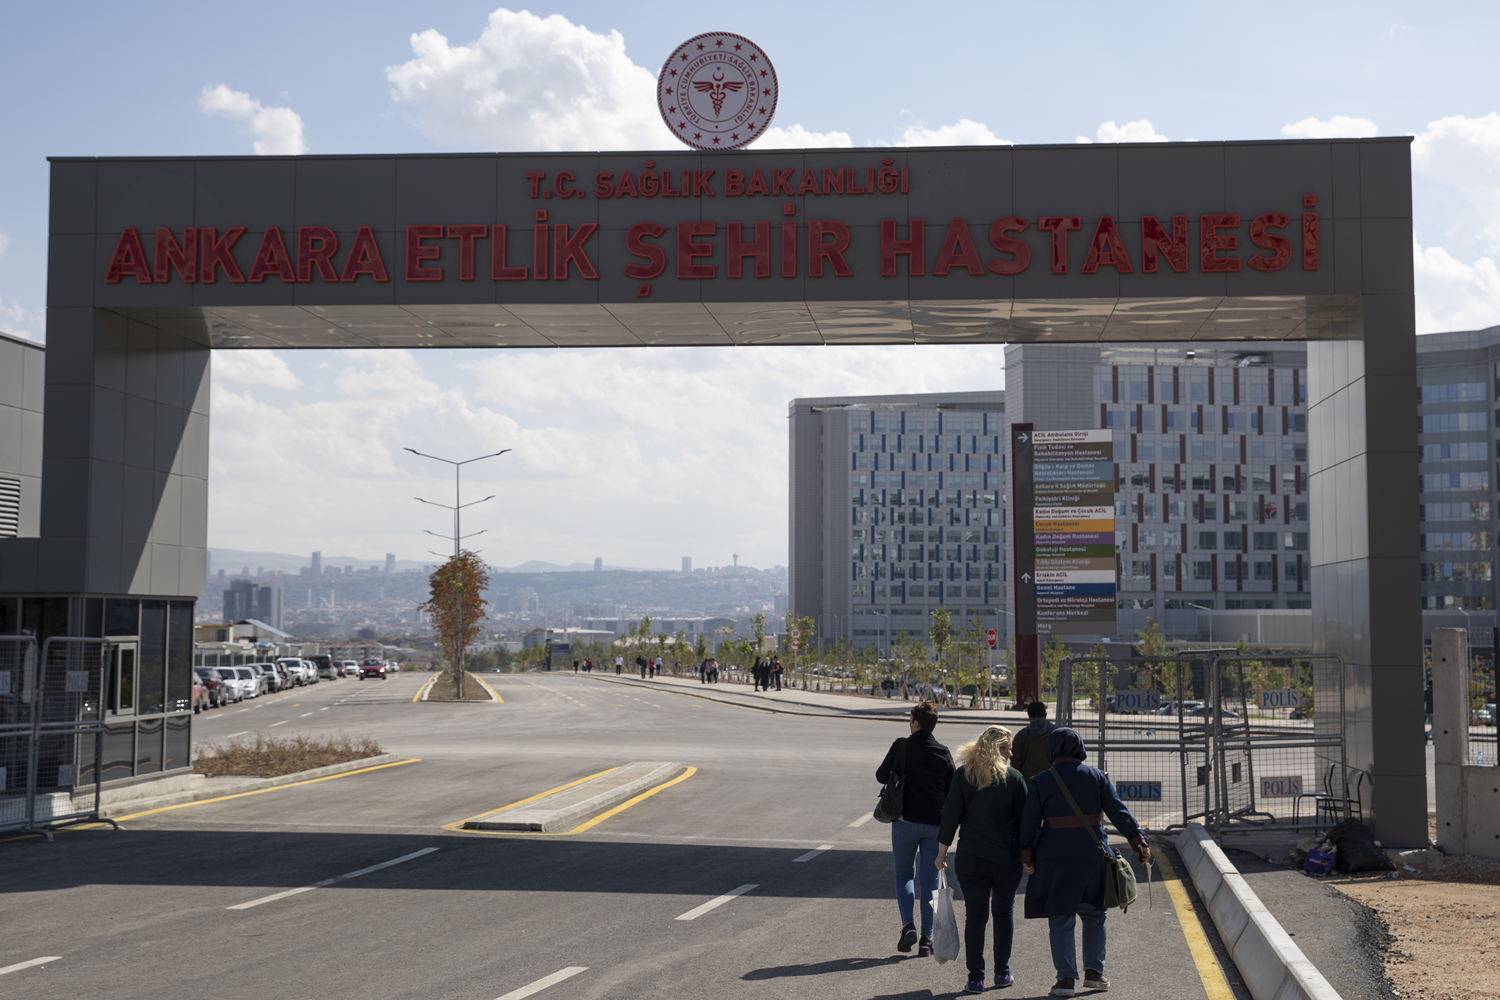 Ankara Etlik ehir Hastanesi hasta kabulne balad